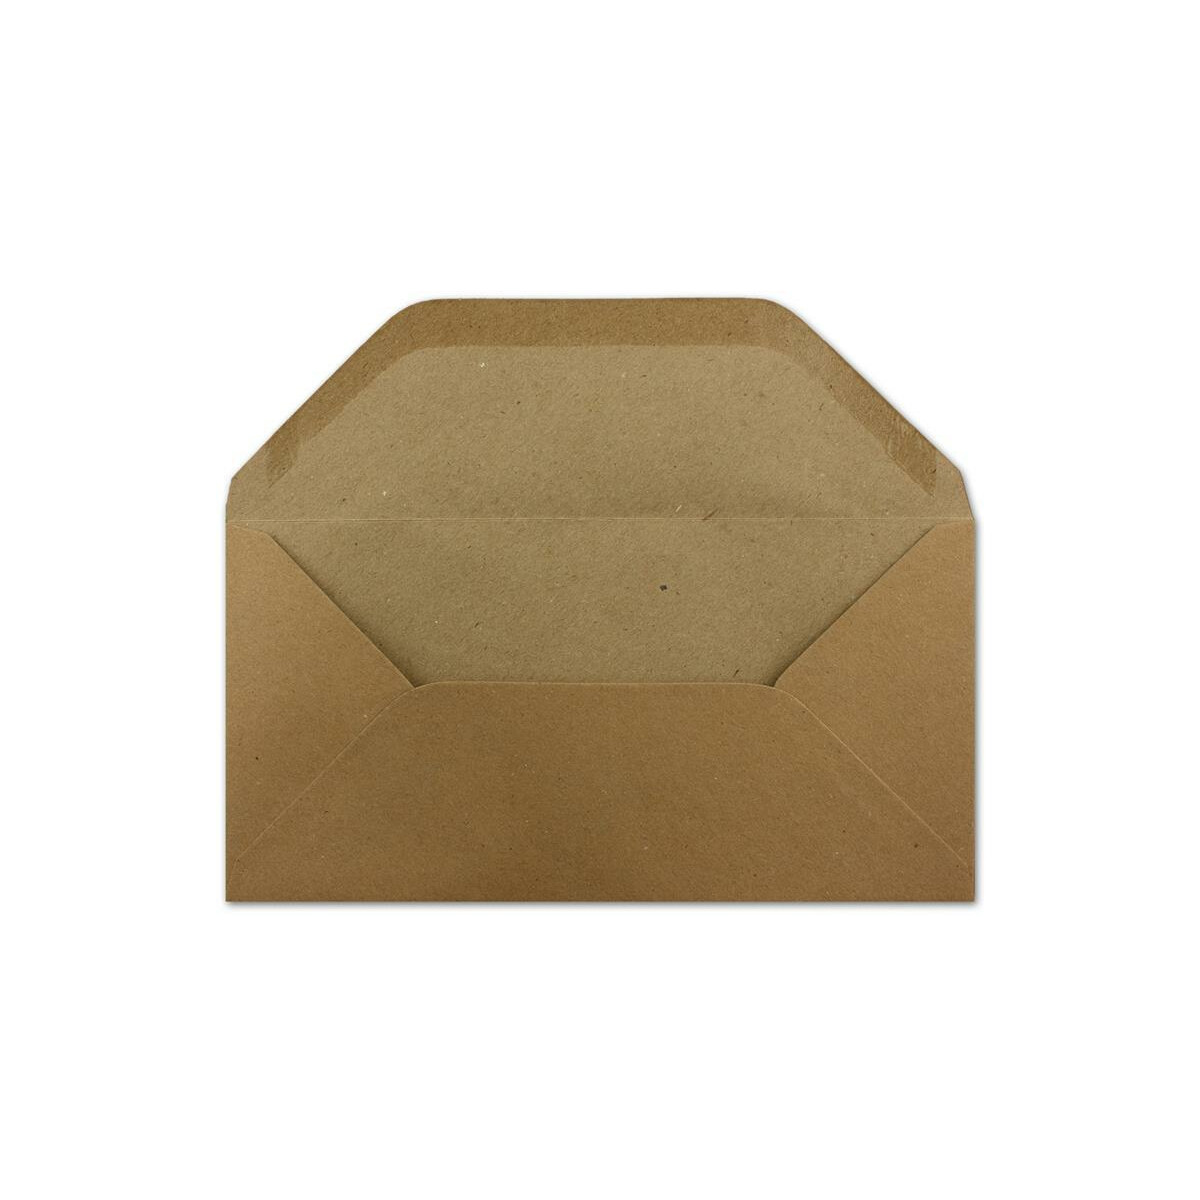 150 DIN Lang Briefumschläge Vintage Braun Recycling 22 x 11 cm 120 g/m² Nassklebung Post-Umschläge ohne Fenster ideal für Weihnachten Grußkarten Einladungen 